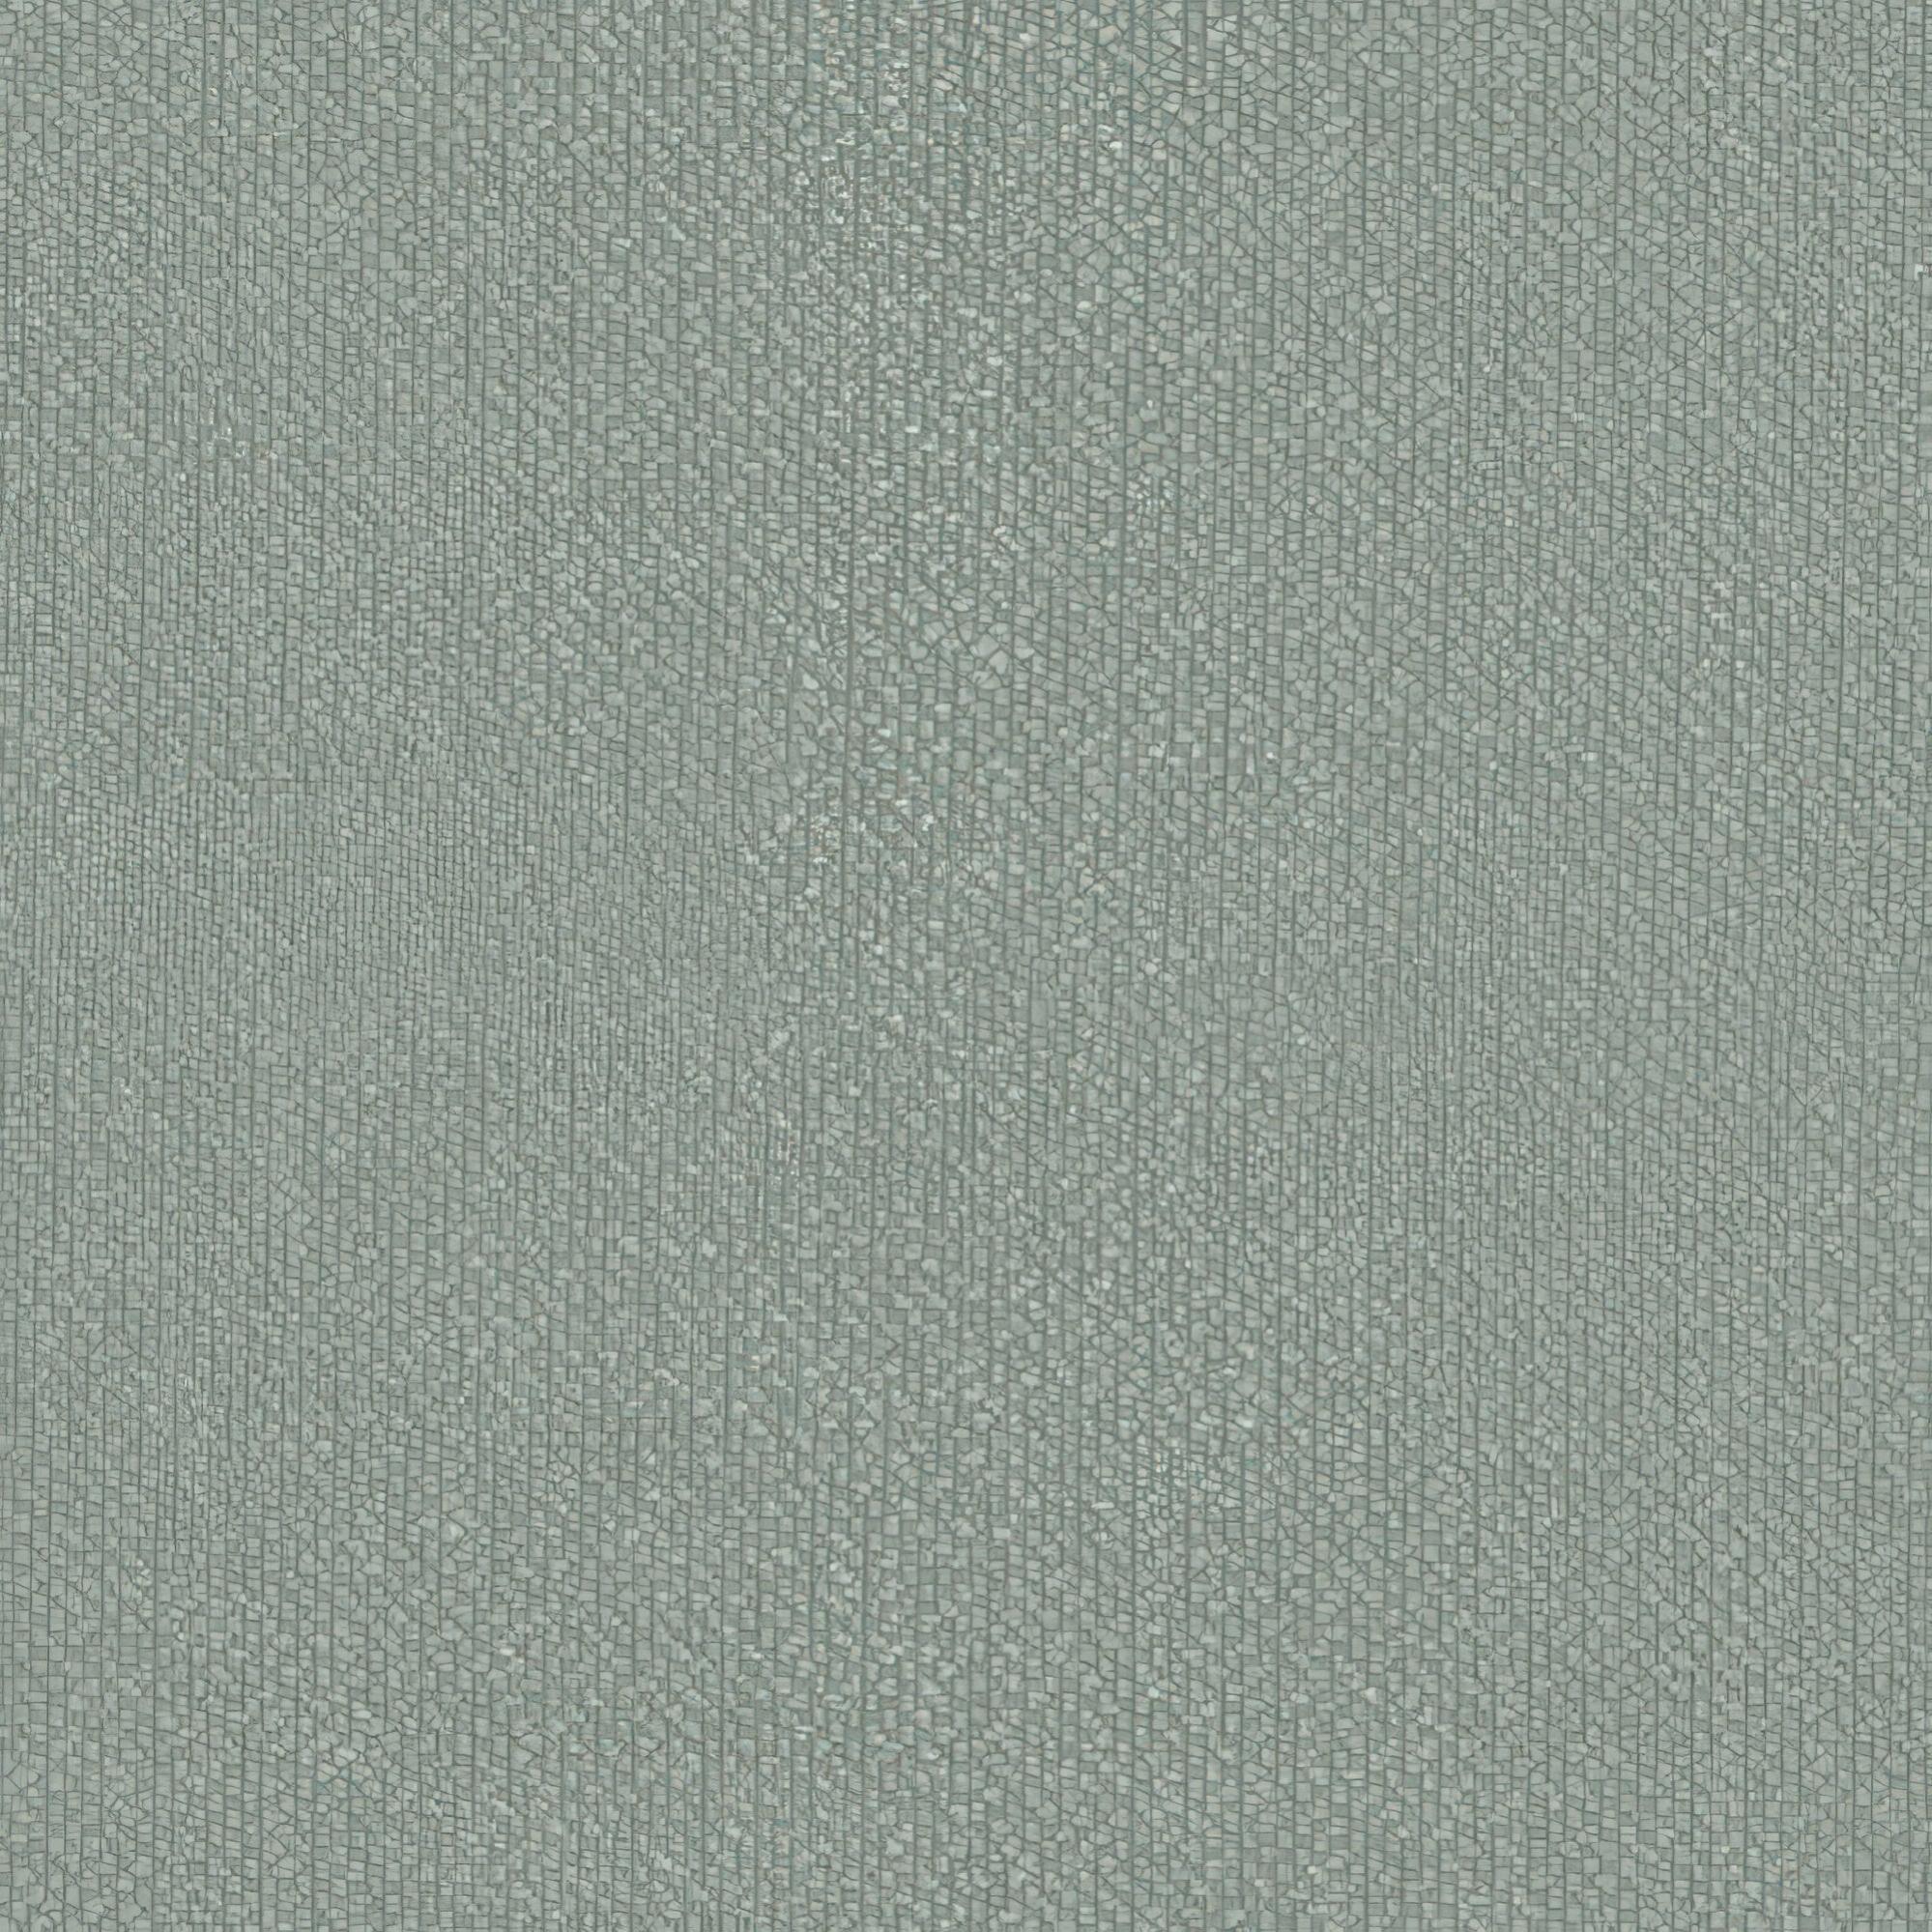 Tela al corte tapicería loneta baracoa gris ancho 140 cm